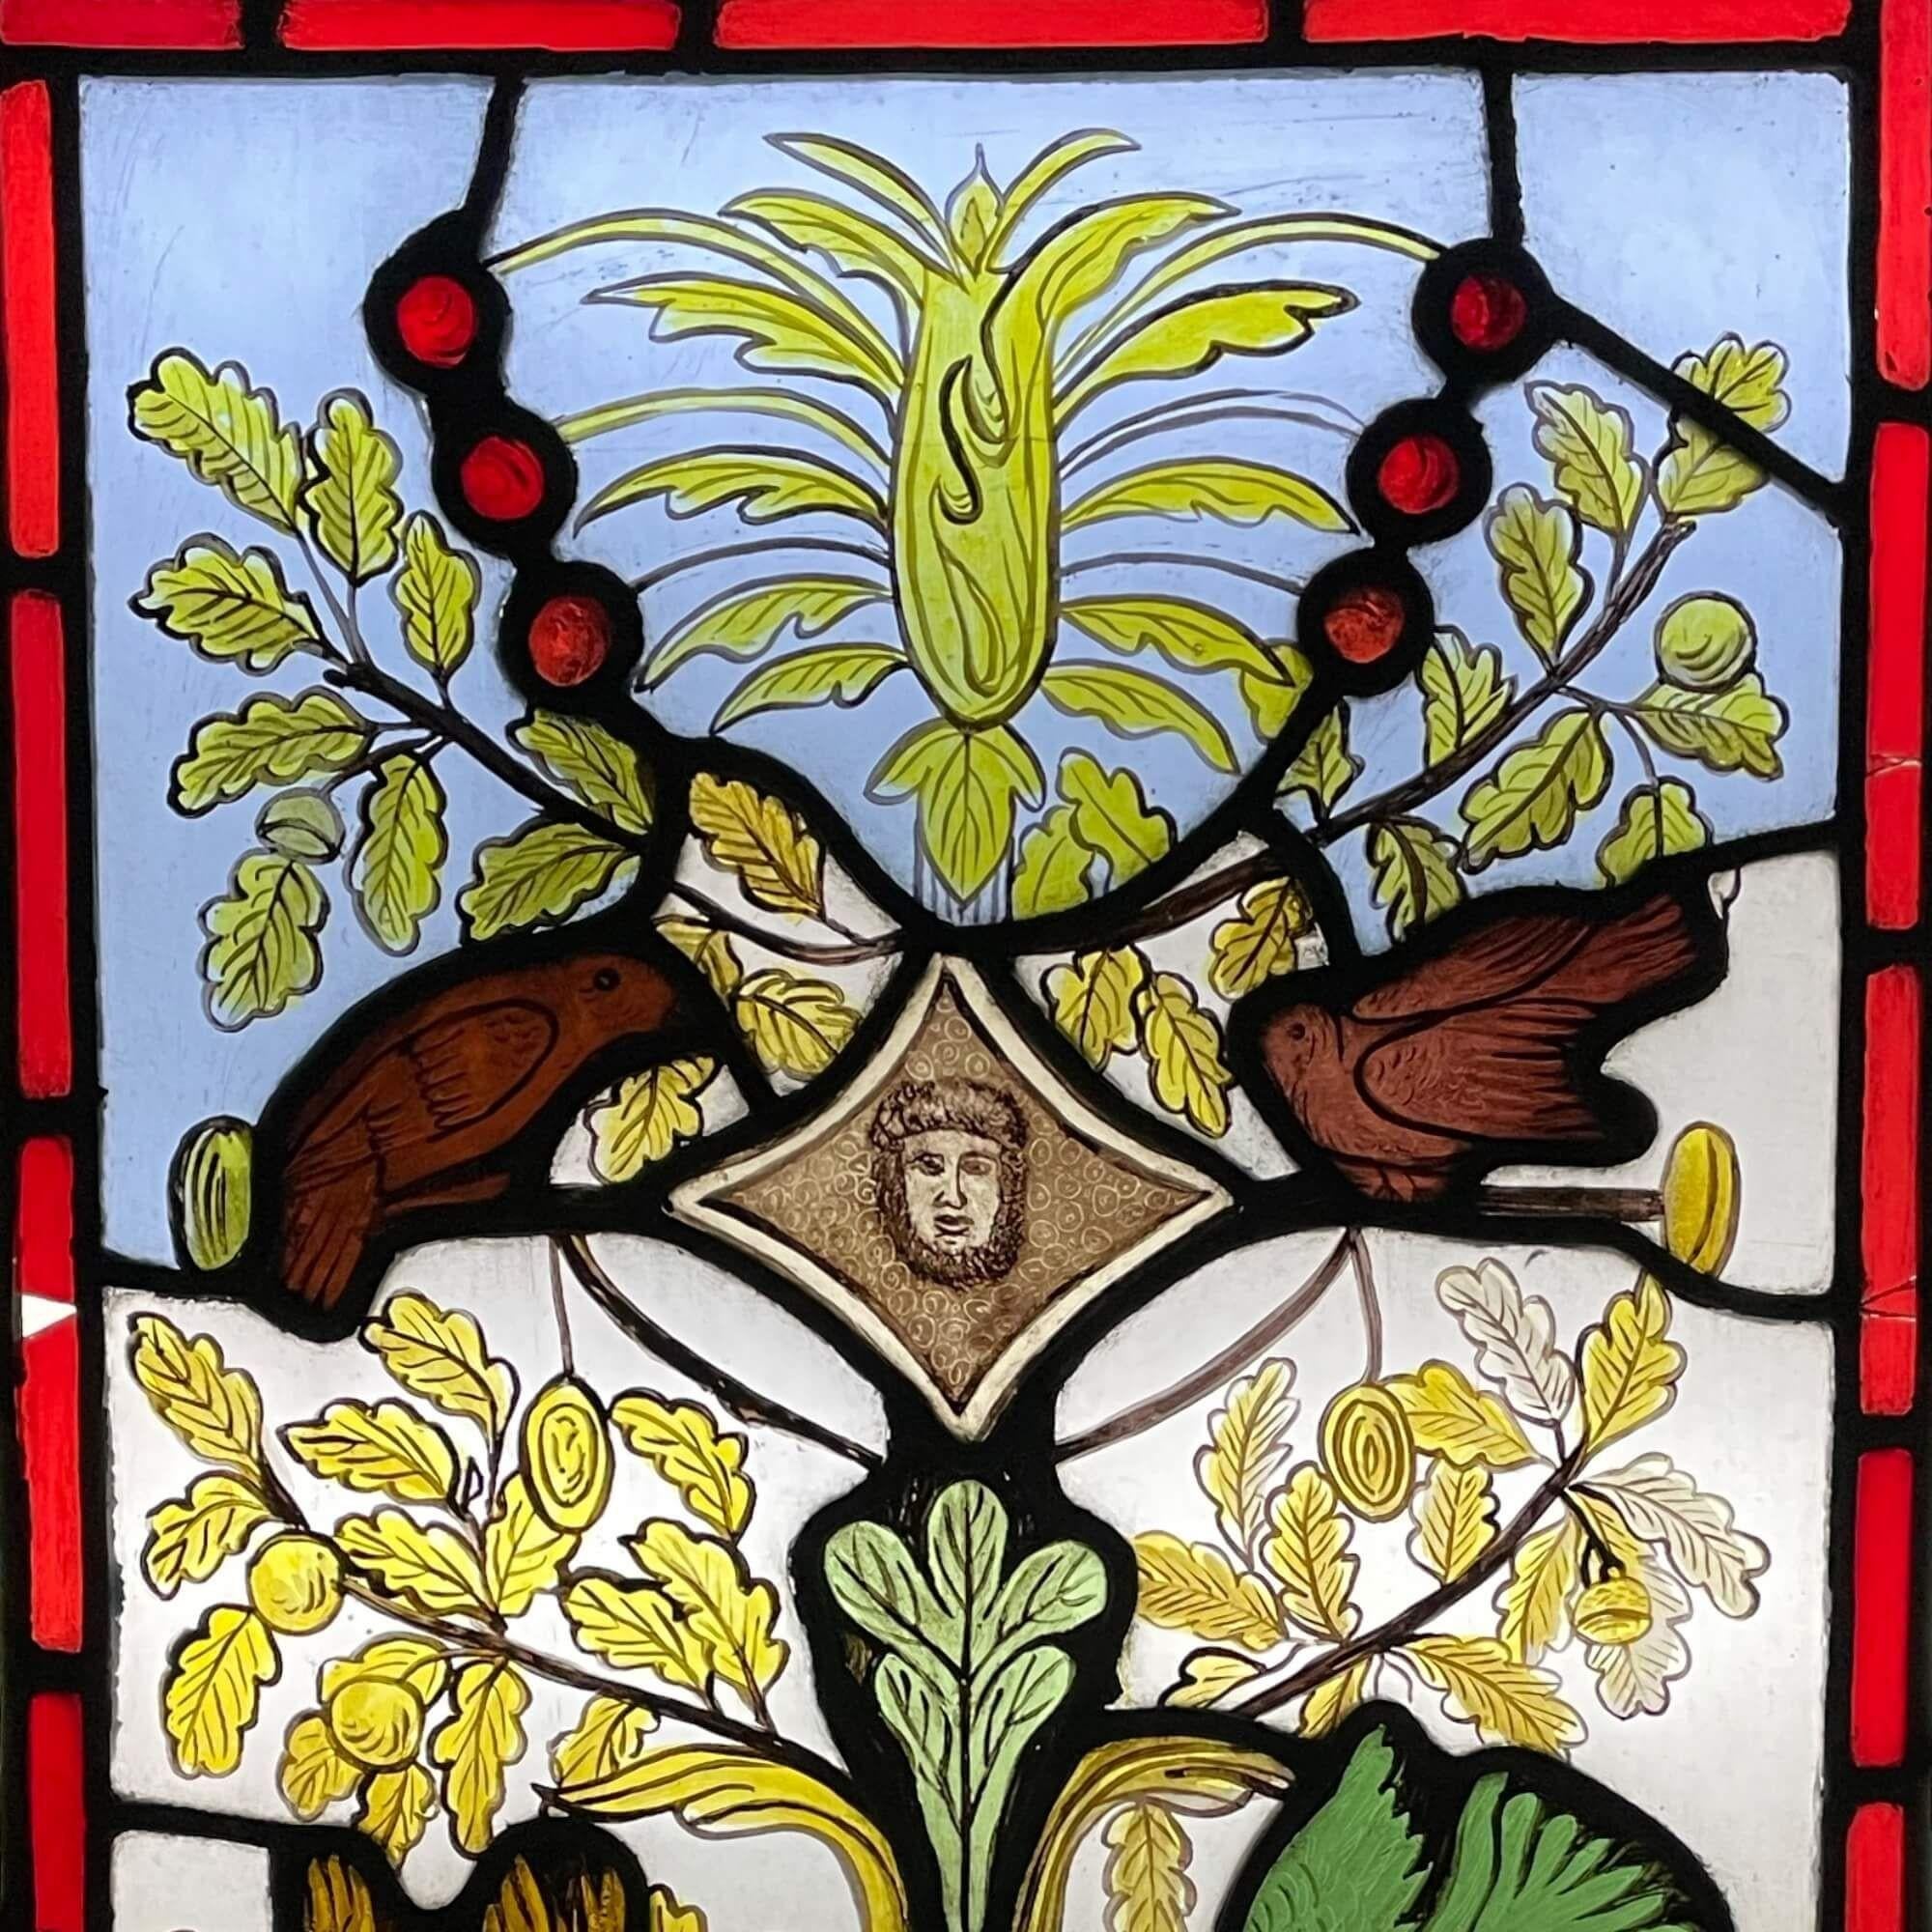 Ein schönes Buntglasfenster aus dem späten 19. Jahrhundert, das eine Szene im Stil eines Lebensbaums darstellt. Wir verkaufen auch zwei andere Tafeln mit einem ähnlichen Thema.

Diese antike Glasmalerei aus der Zeit um 1880 ist in Farbe und